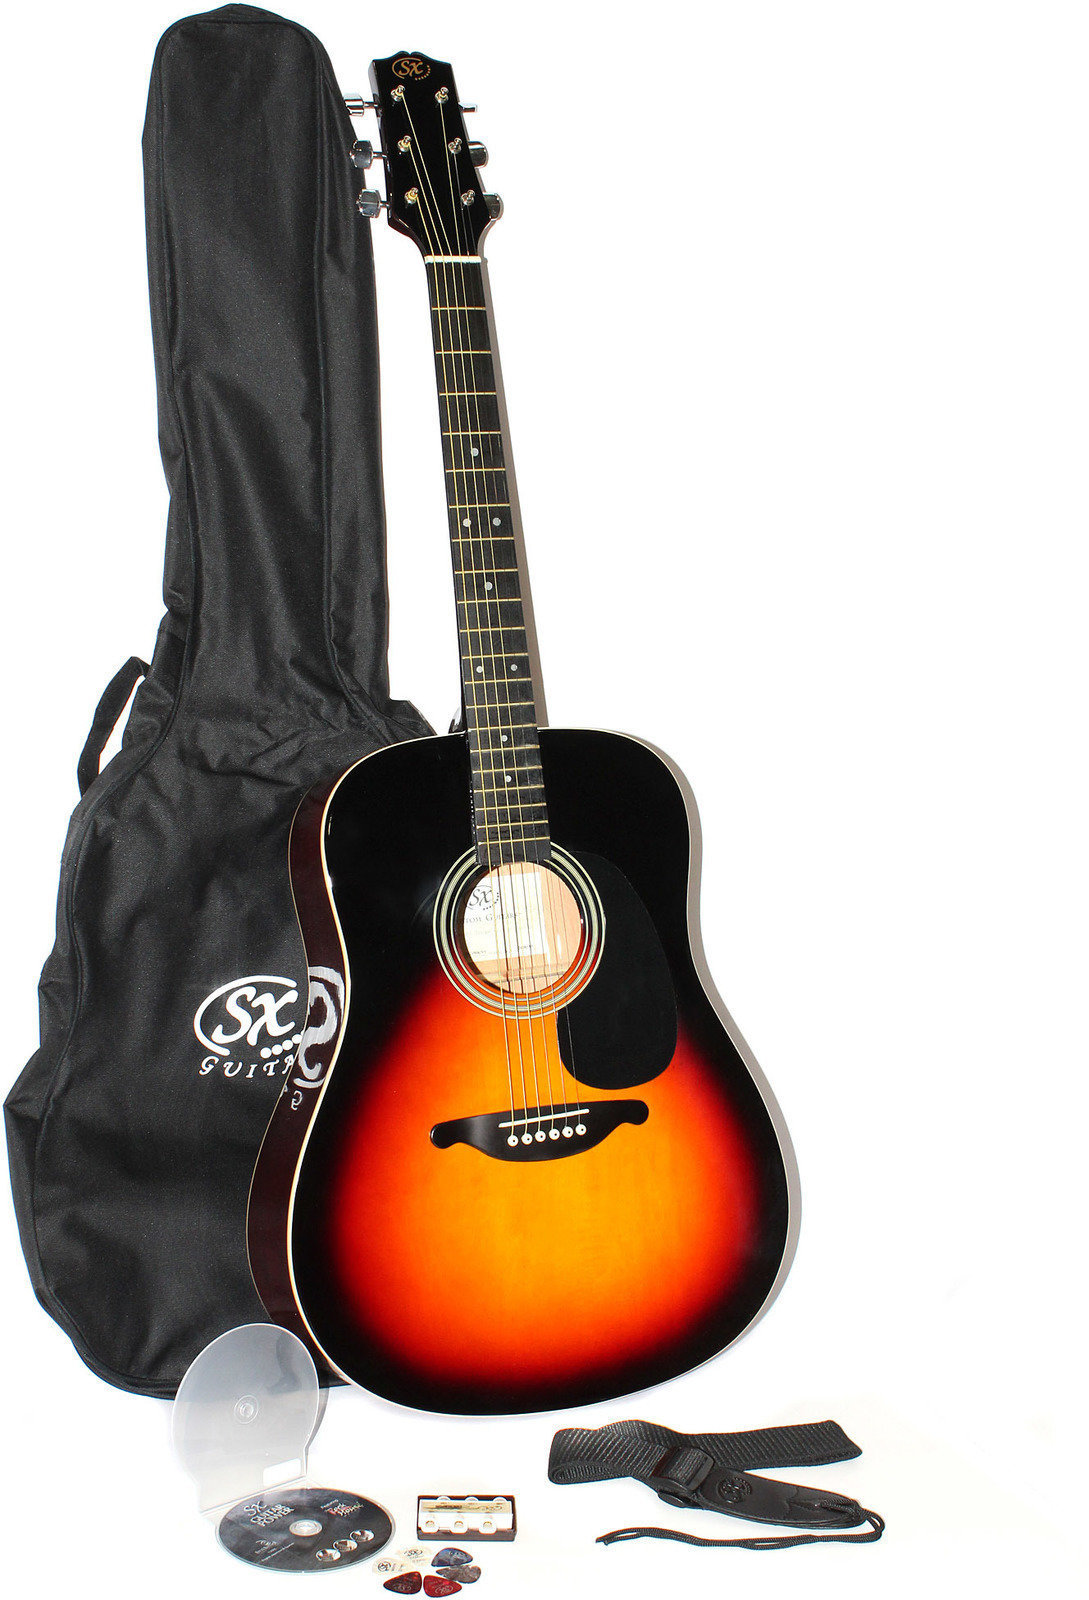 Kit guitare acoustique SX DG 150 K VS